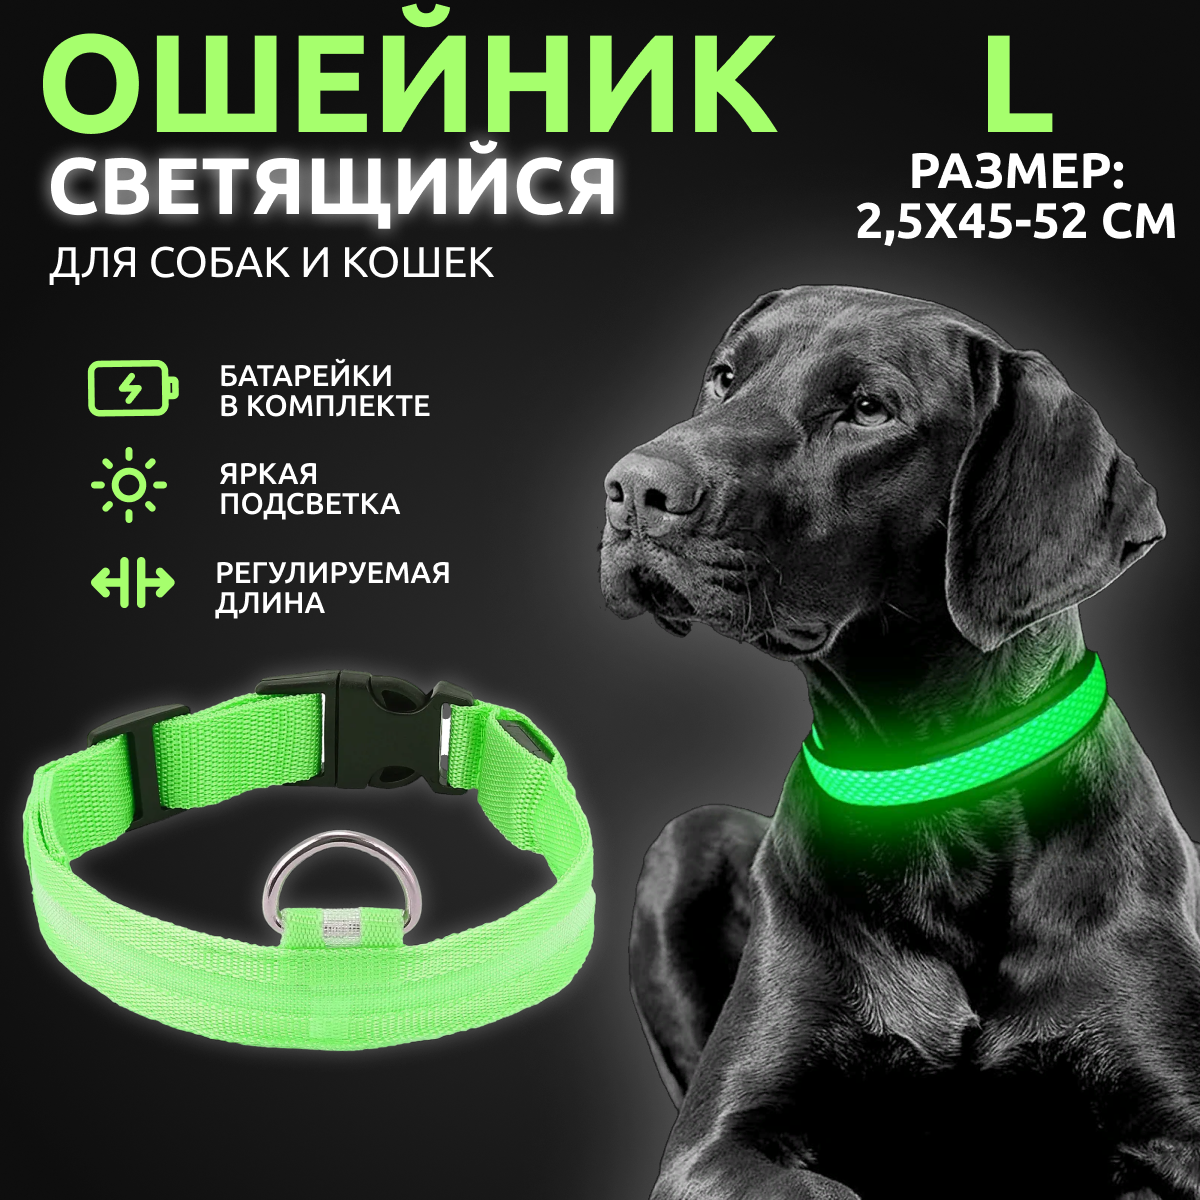 Ошейник светящийся для собак AT светодиодный зеленого, L - 2,5х45-52 см